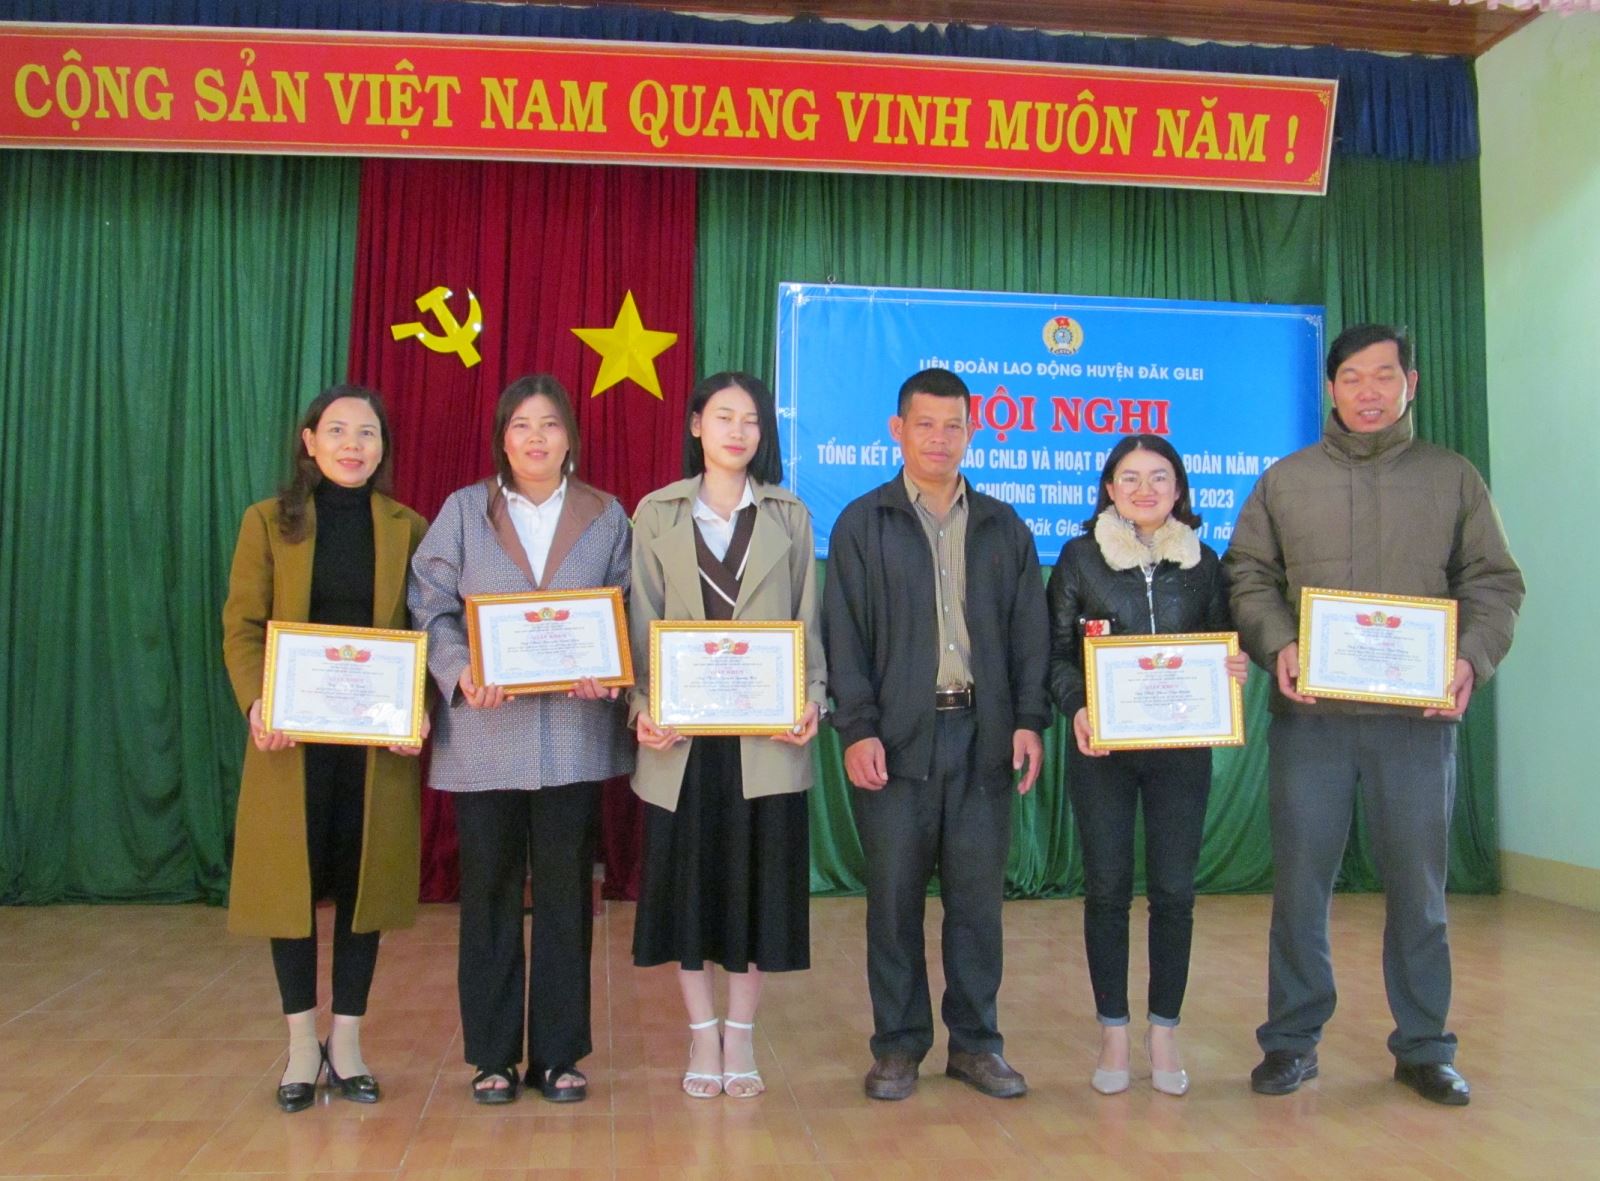 Liên đoàn Lao động huyện Đắk Glei tổng kết hoạt động công đoàn năm 2022